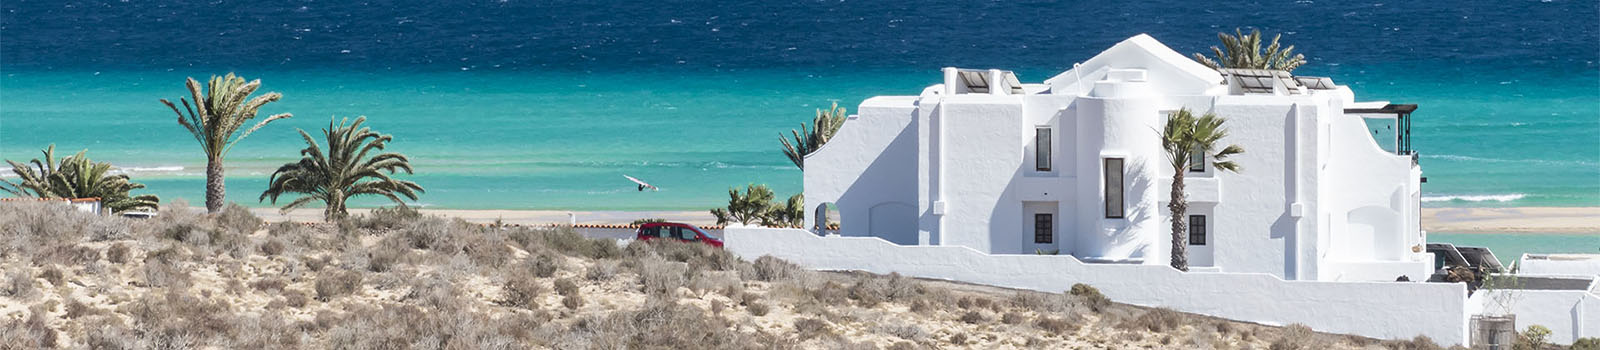 Immobilien kaufen, erwerben und vererben auf Fuerteventura.